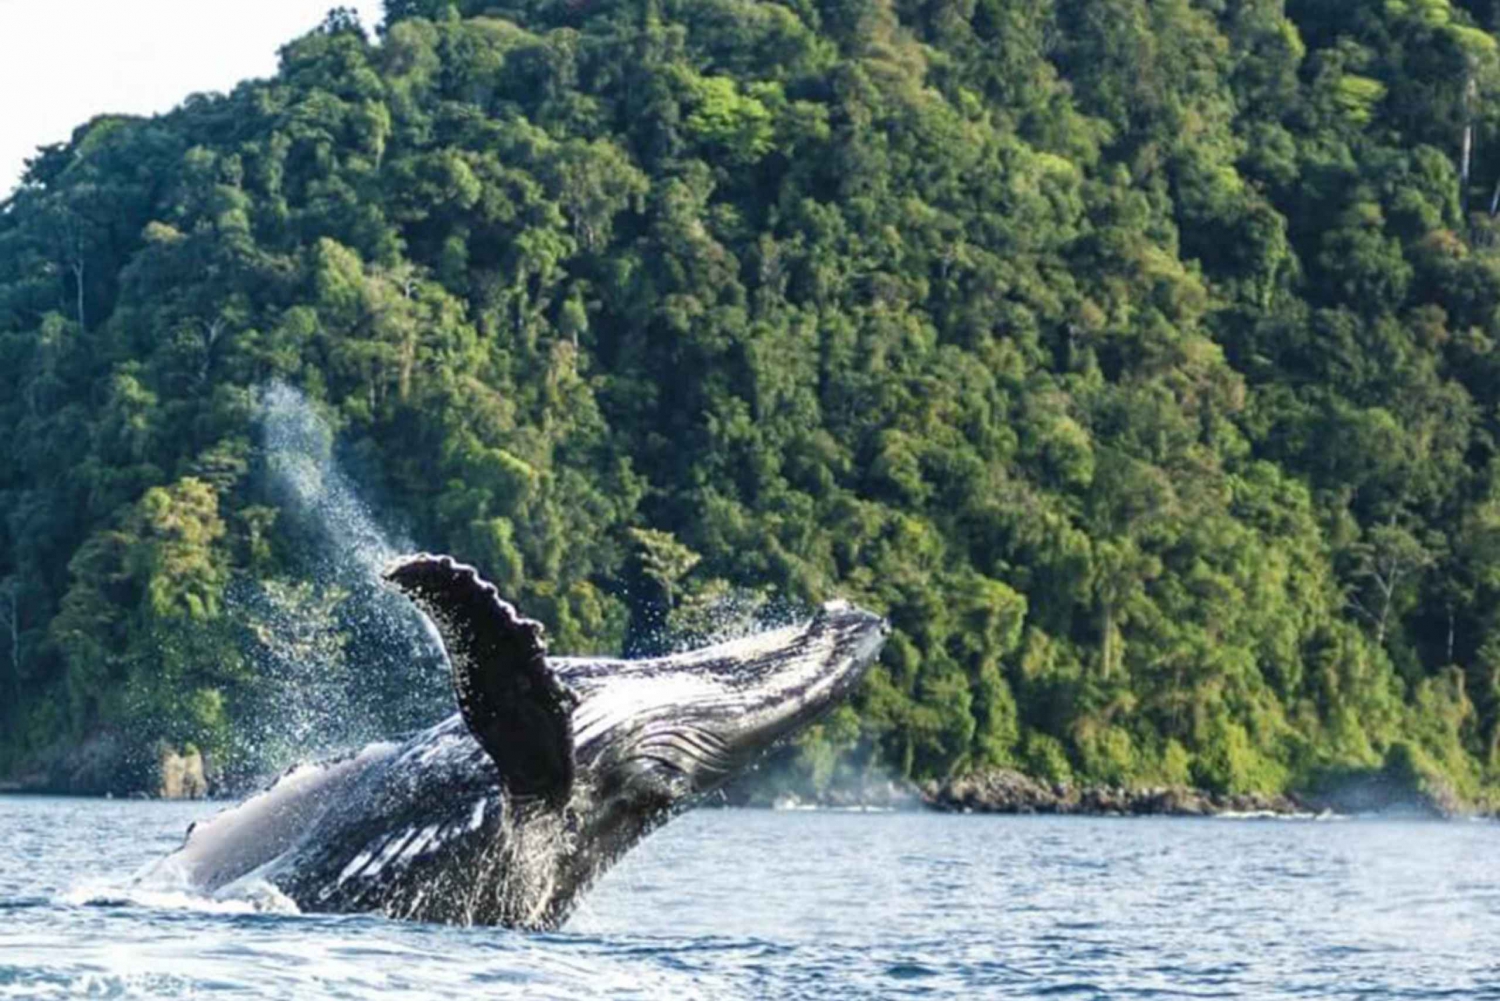 Buenaventura: Excursión de avistamiento de ballenas en la costa del Pacífico